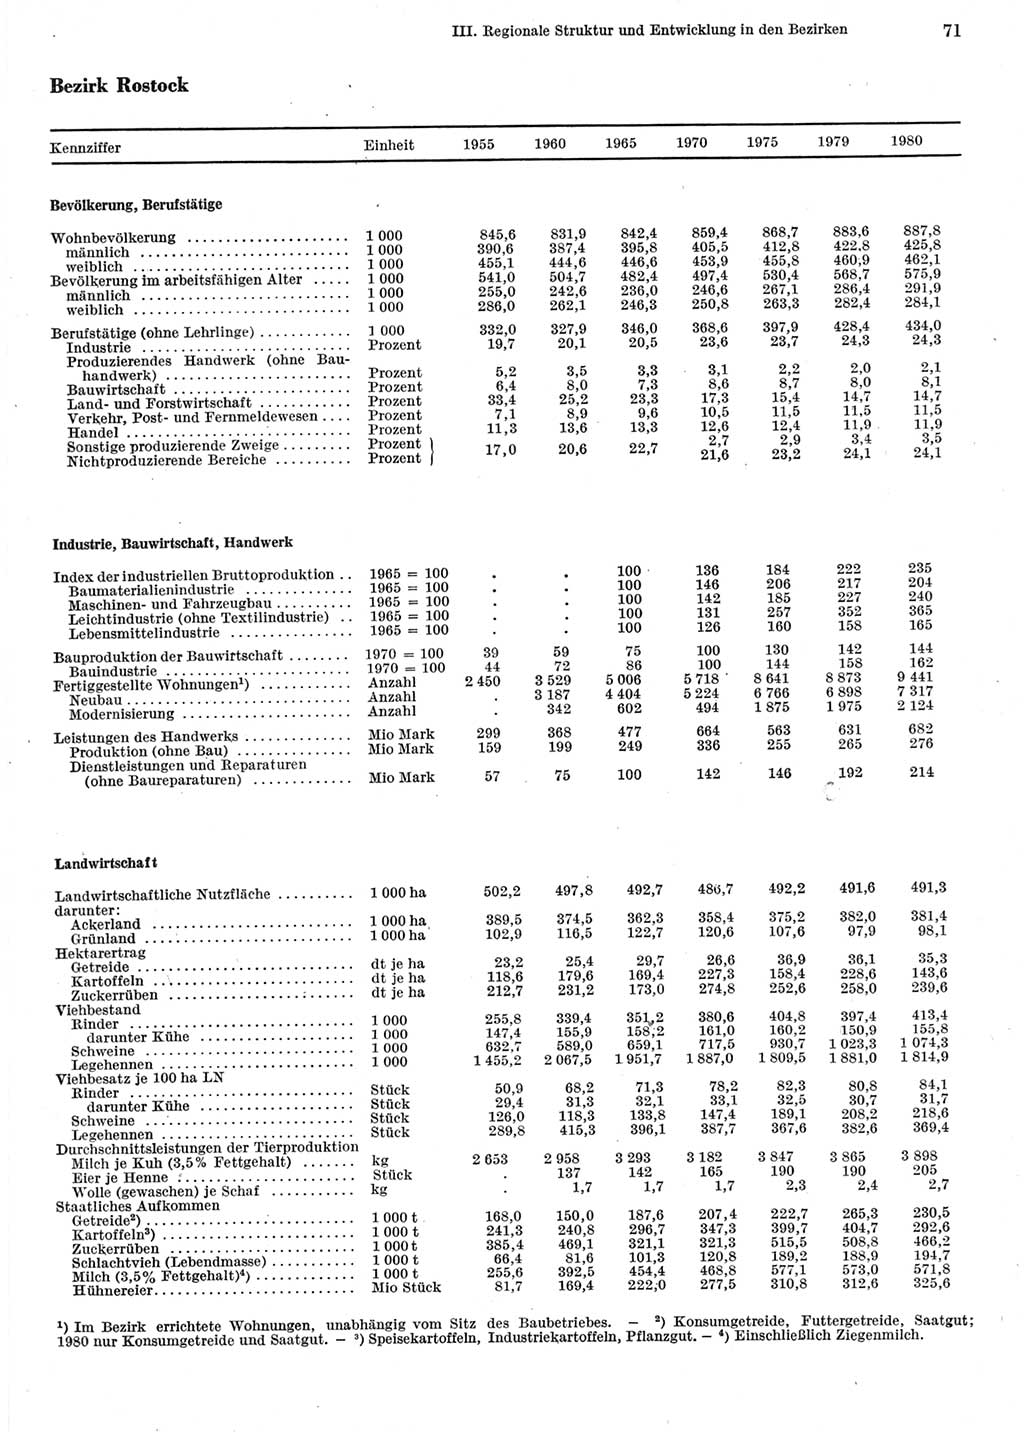 Statistisches Jahrbuch der Deutschen Demokratischen Republik (DDR) 1981, Seite 71 (Stat. Jb. DDR 1981, S. 71)